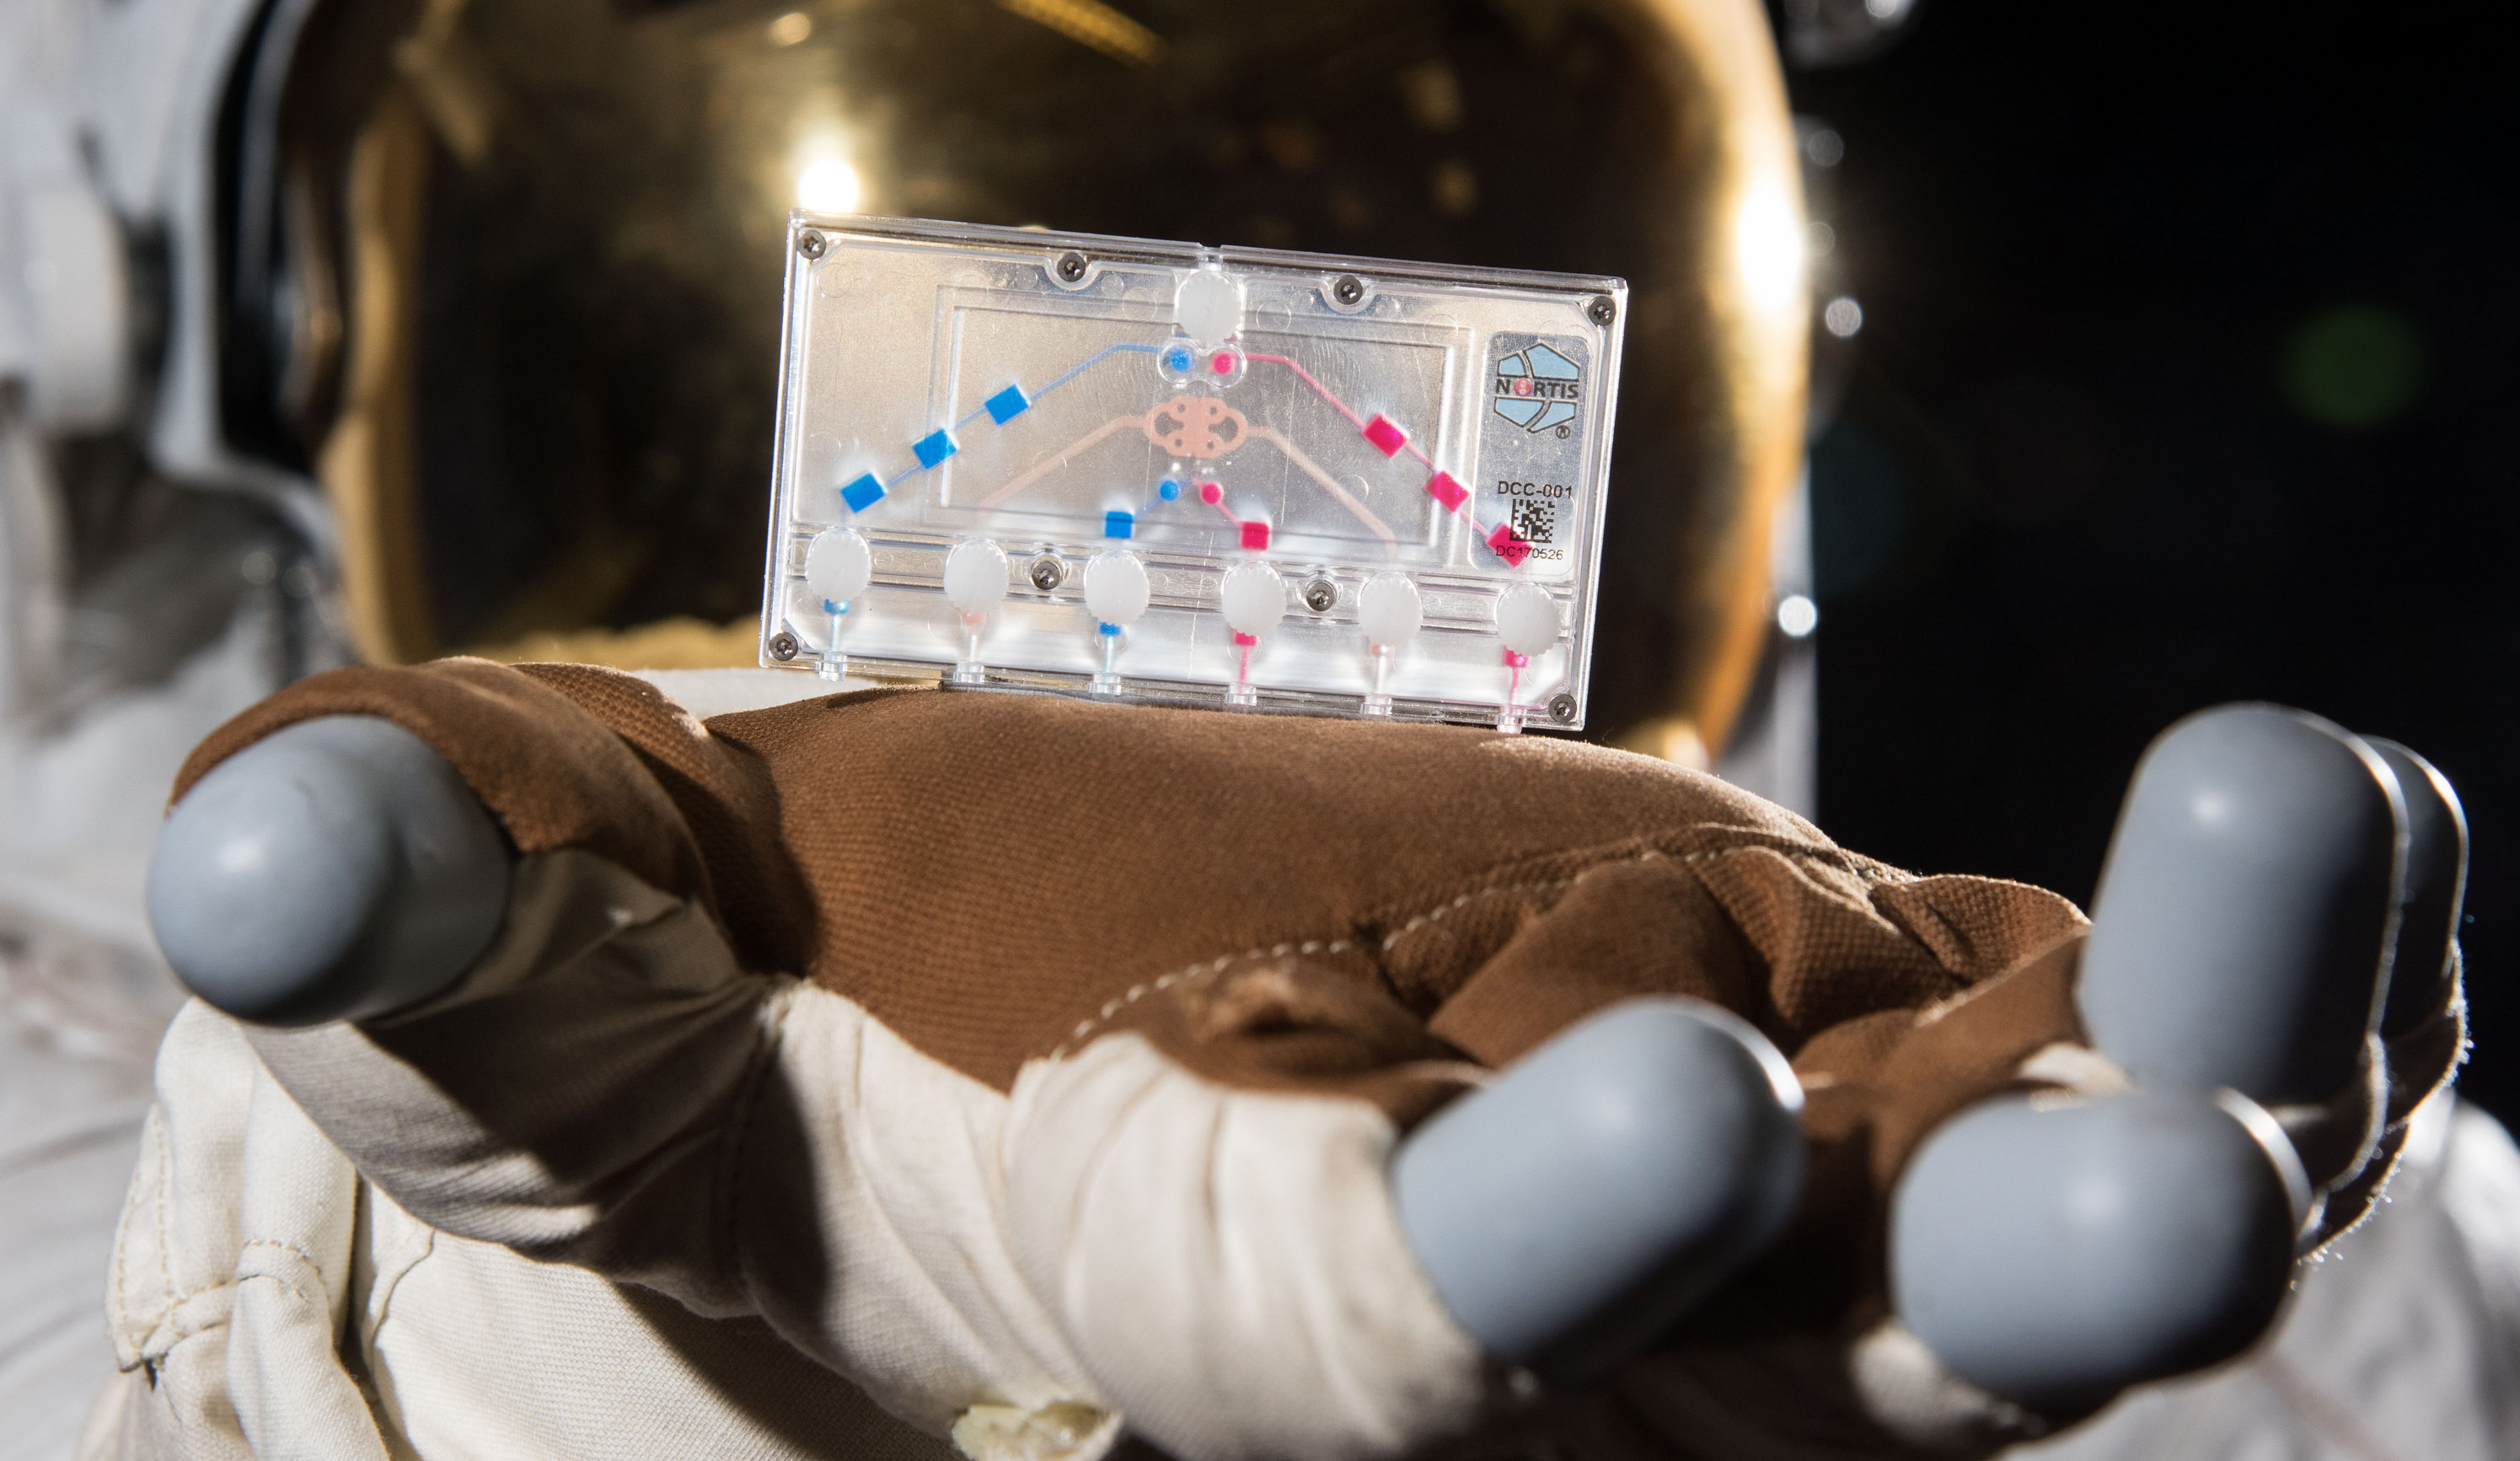 Стволовые клетки, Бартоломео, клетки-на-чипе и шарики Adidas: что везут в космос